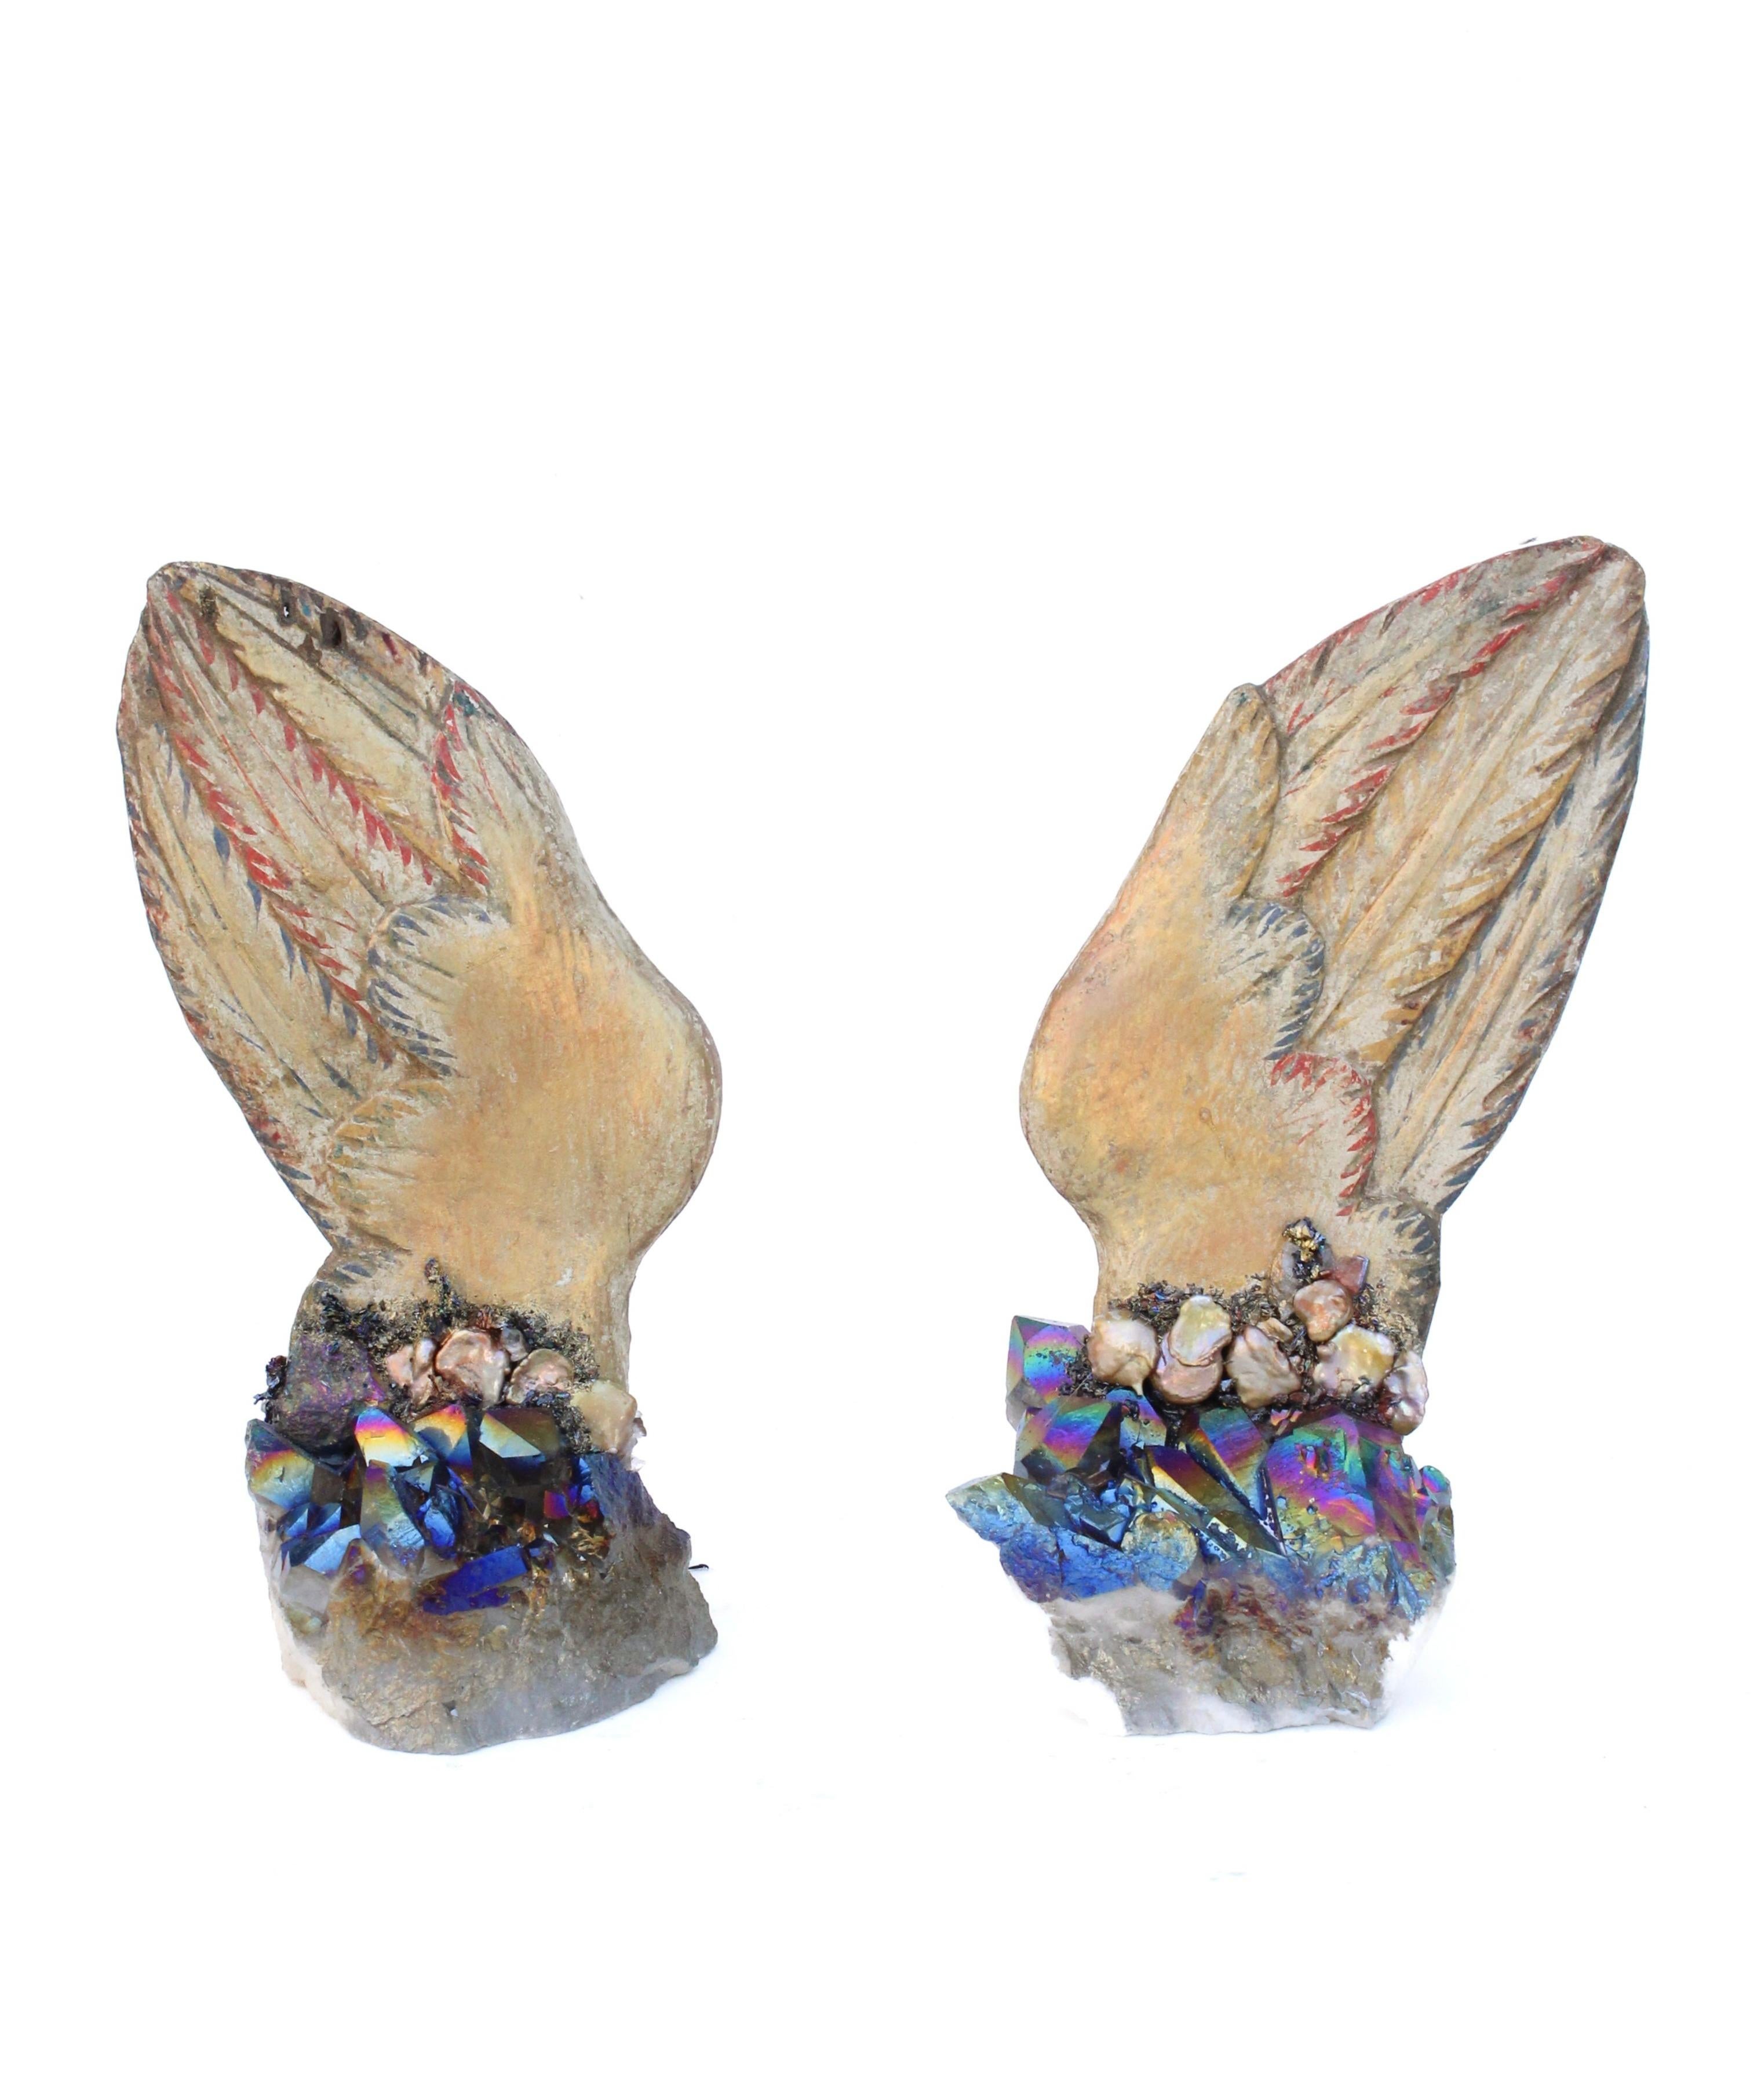 Paar italienische, handgeschnitzte und bemalte Engelsflügel aus dem 18. Jahrhundert auf titanbeschichteten Quarzkristallclustern mit naturgeformten Barockperlen.

Die handgeschnitzten mehrfarbigen Engelsflügel stammen aus einer historischen Kirche